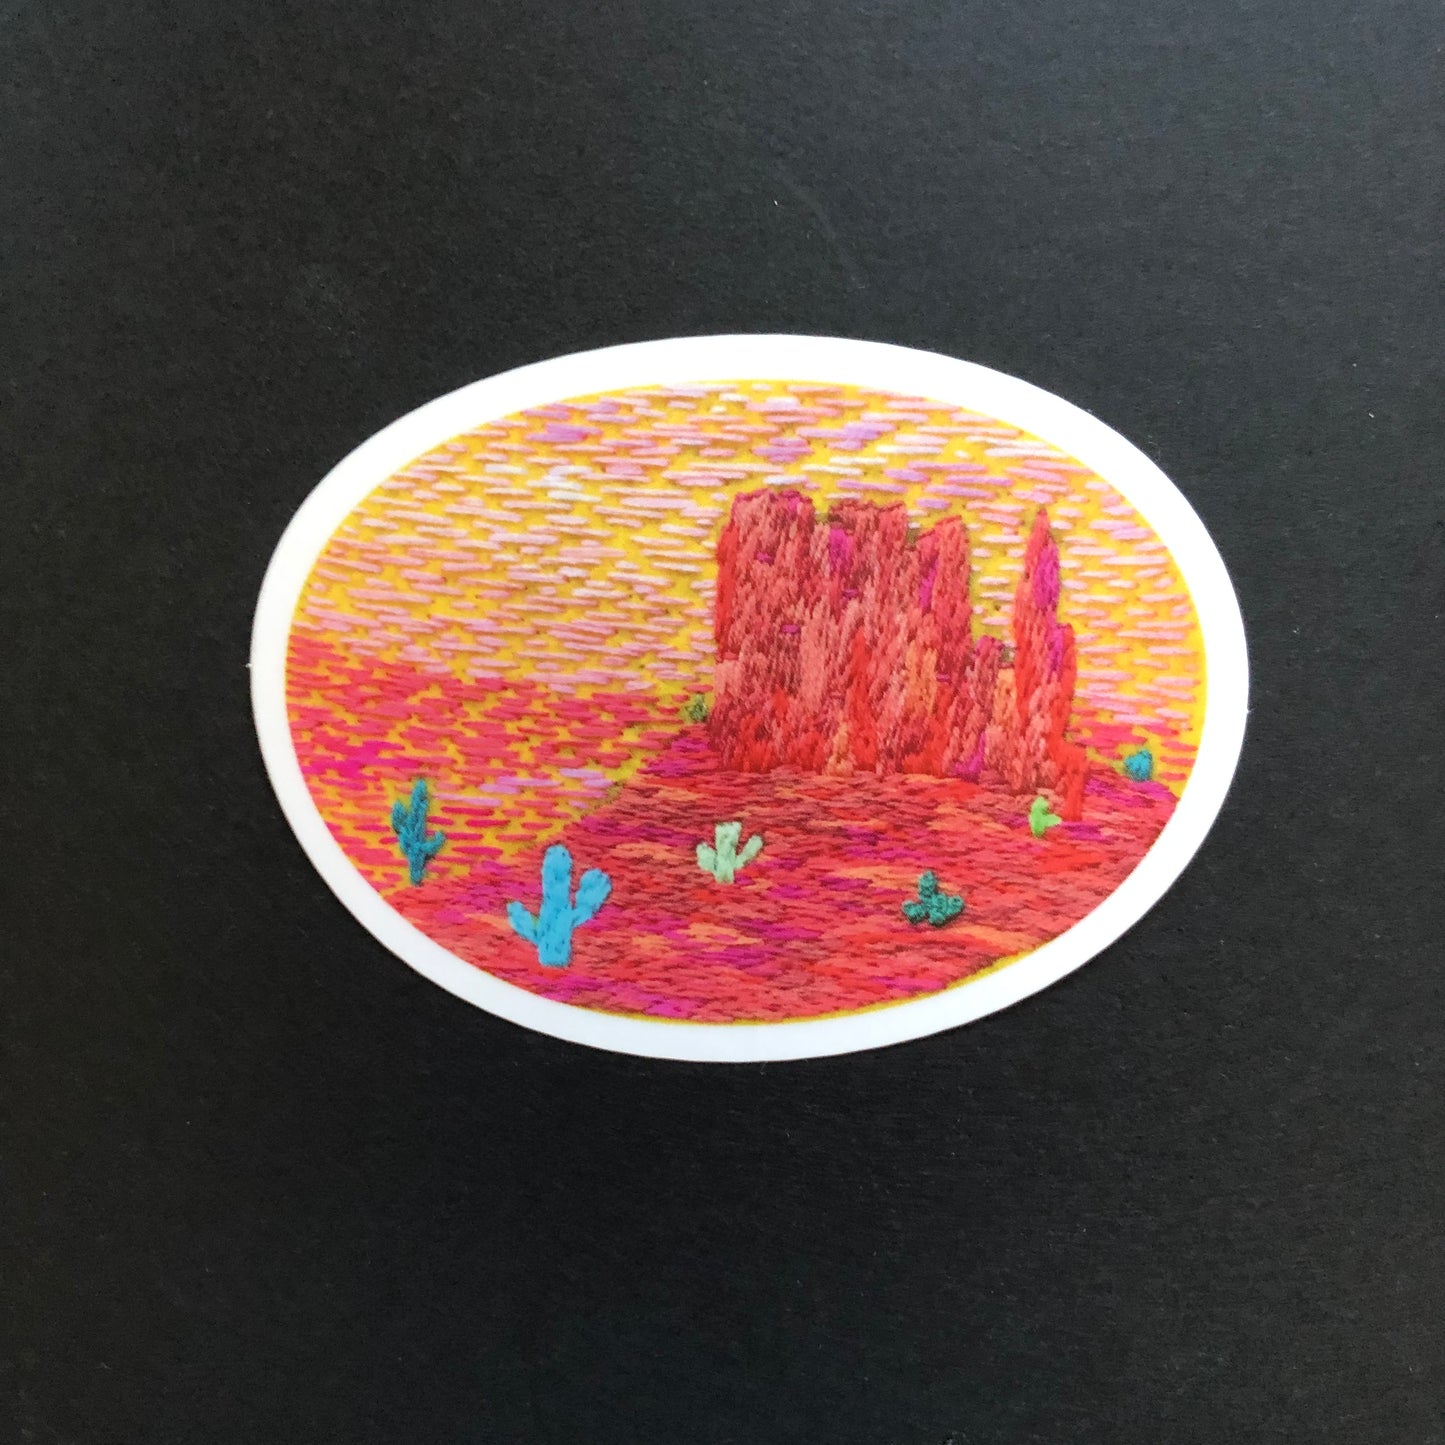 STICKER: Embroidered Monument Valley Vinyl Sticker